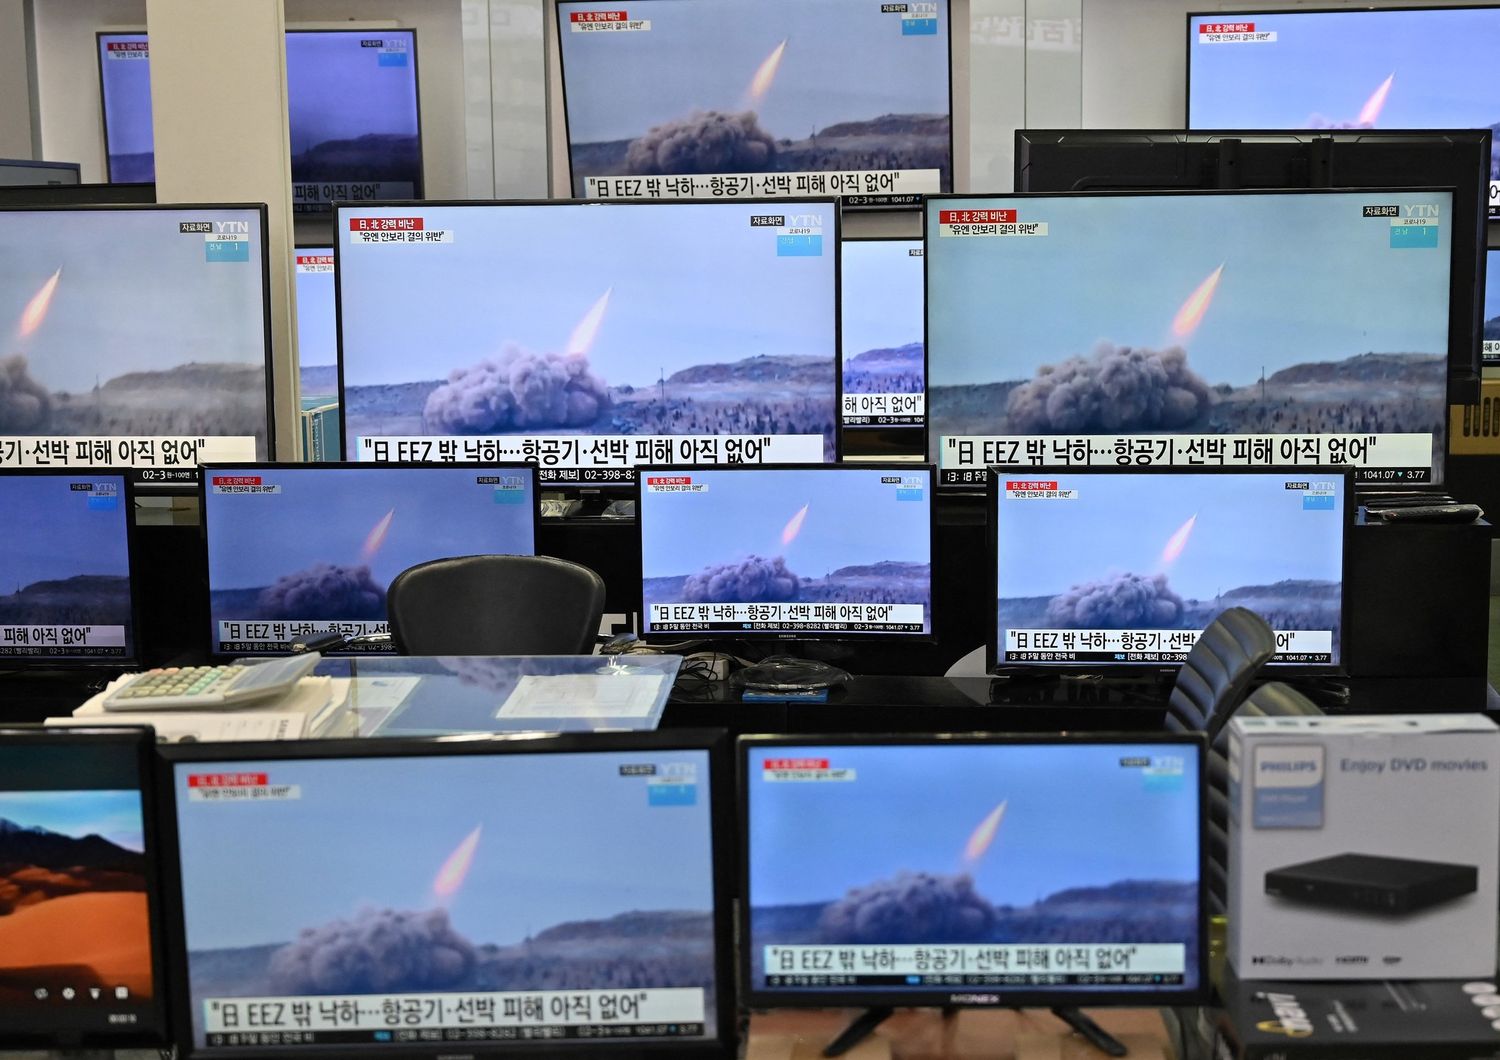 Il lancio dei missili da parte della Corea del Nord trasmesso da televisioni sudcoreane